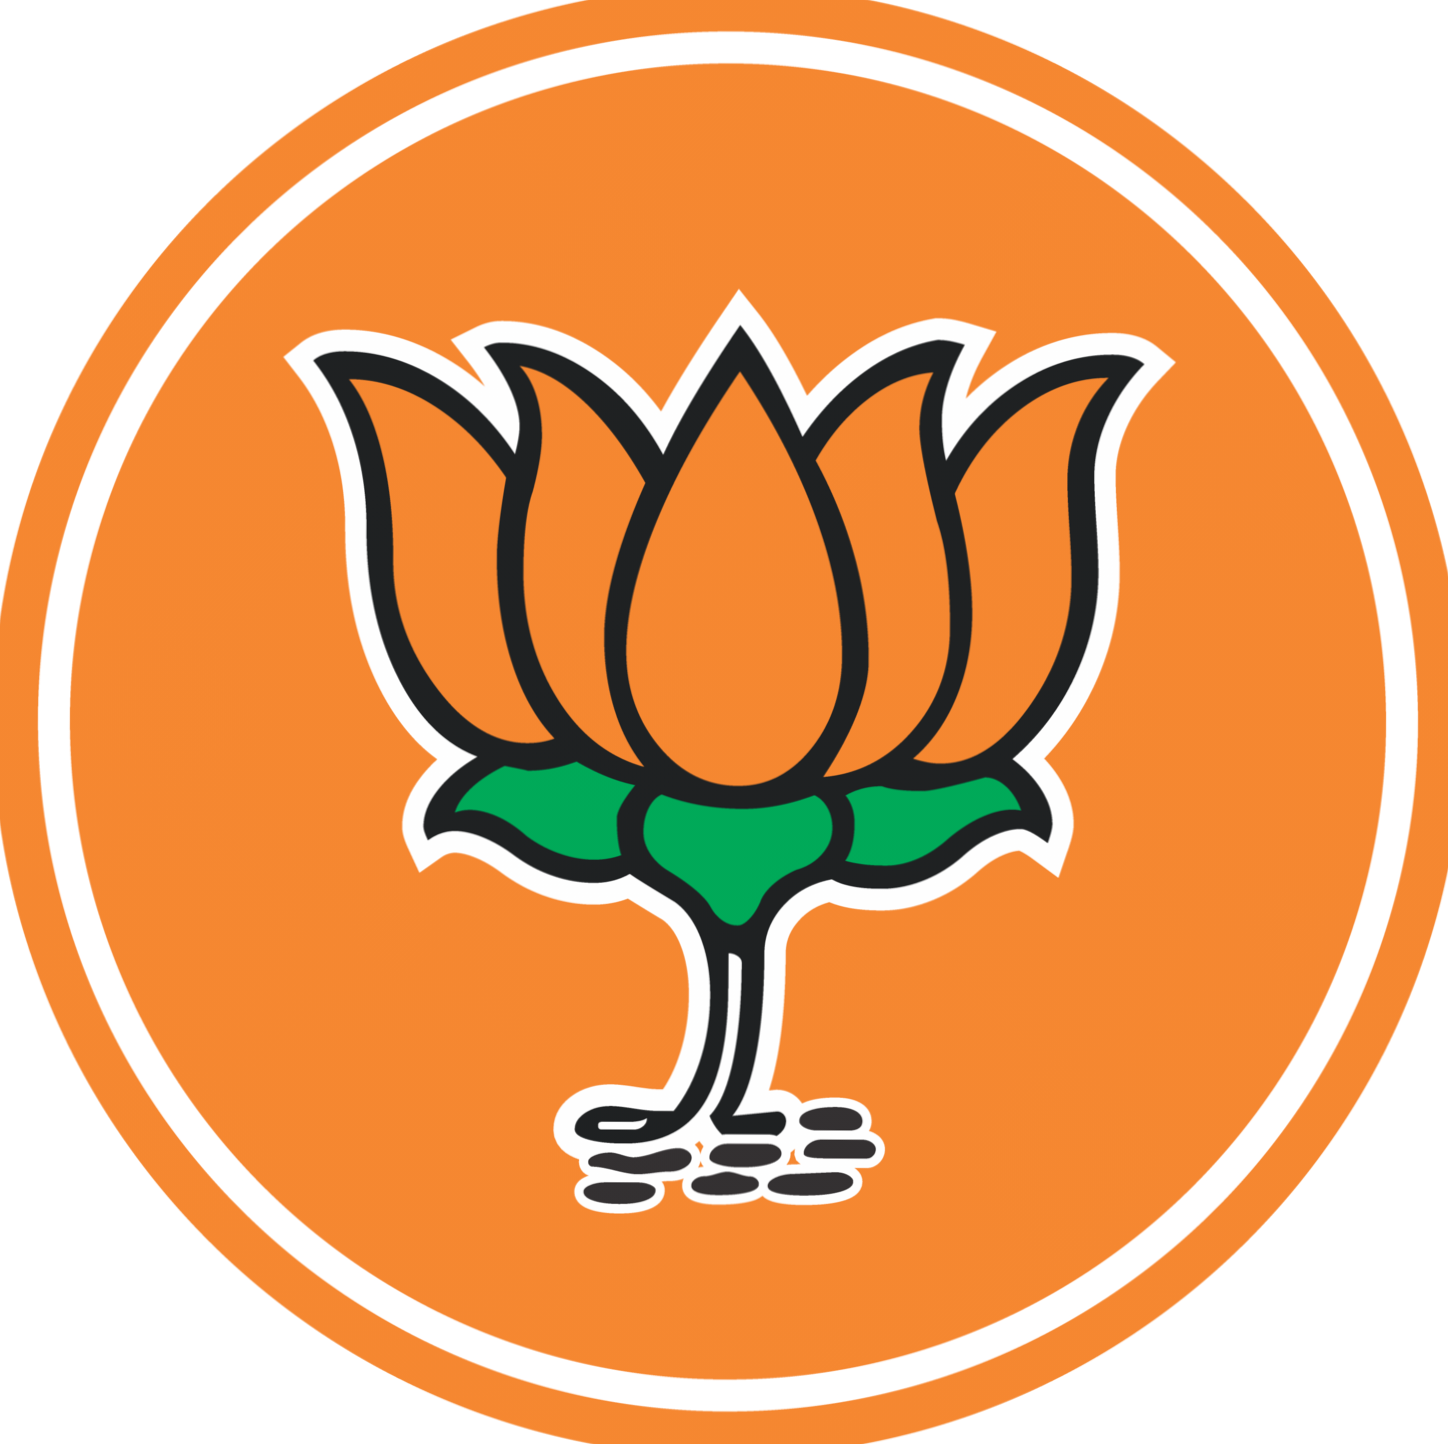 BREAKING: BJP ने लोकसभा चुनाव के लिए 195 प्रत्याशियों की घोषणा की, छत्तीसगढ़ की सभी 11 सीटों पर हुआ प्रत्याशियों का ऐलान